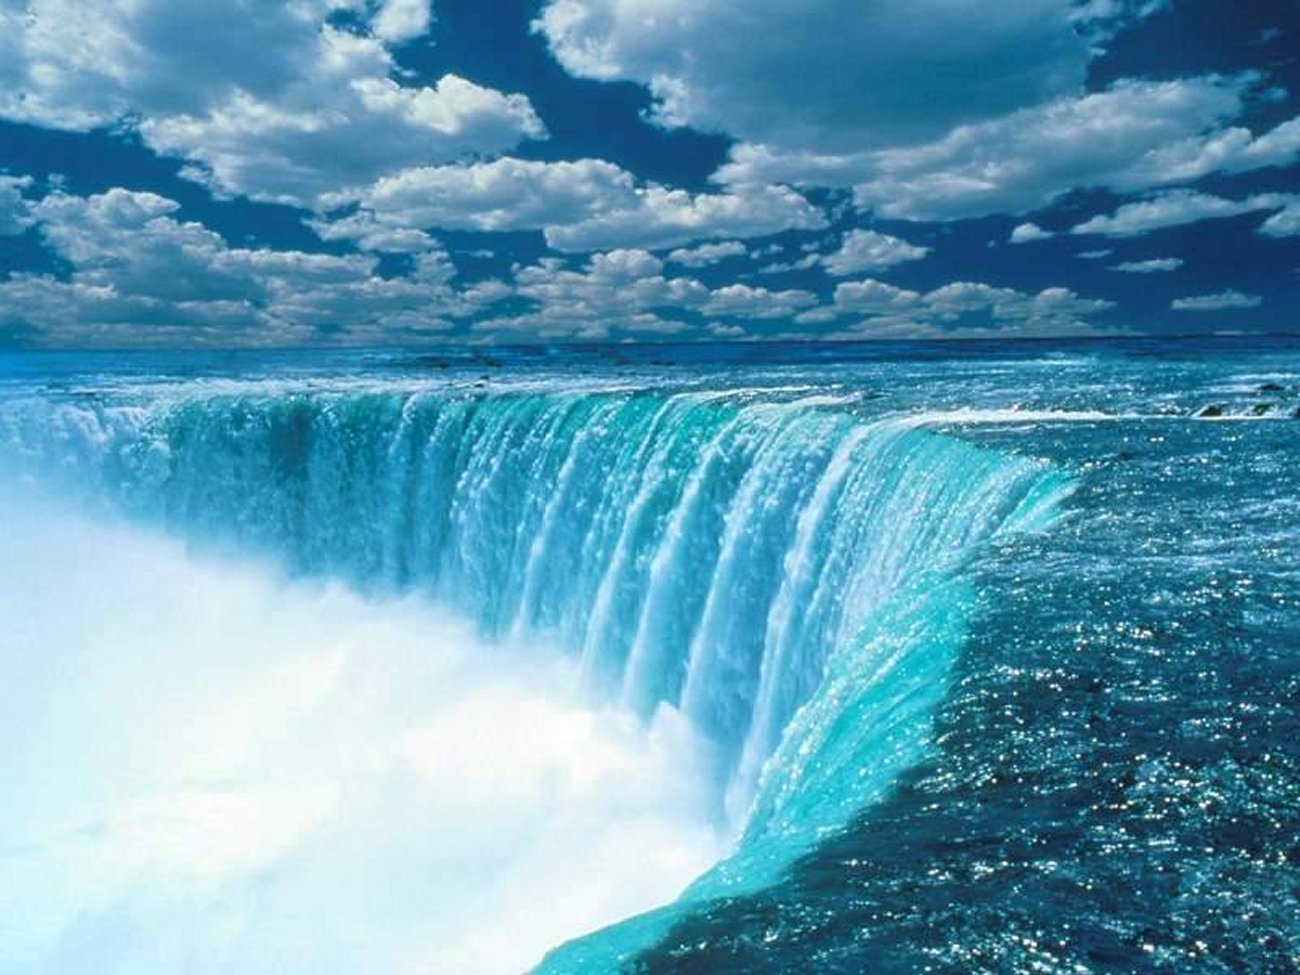 Niagara Falls by nynites54